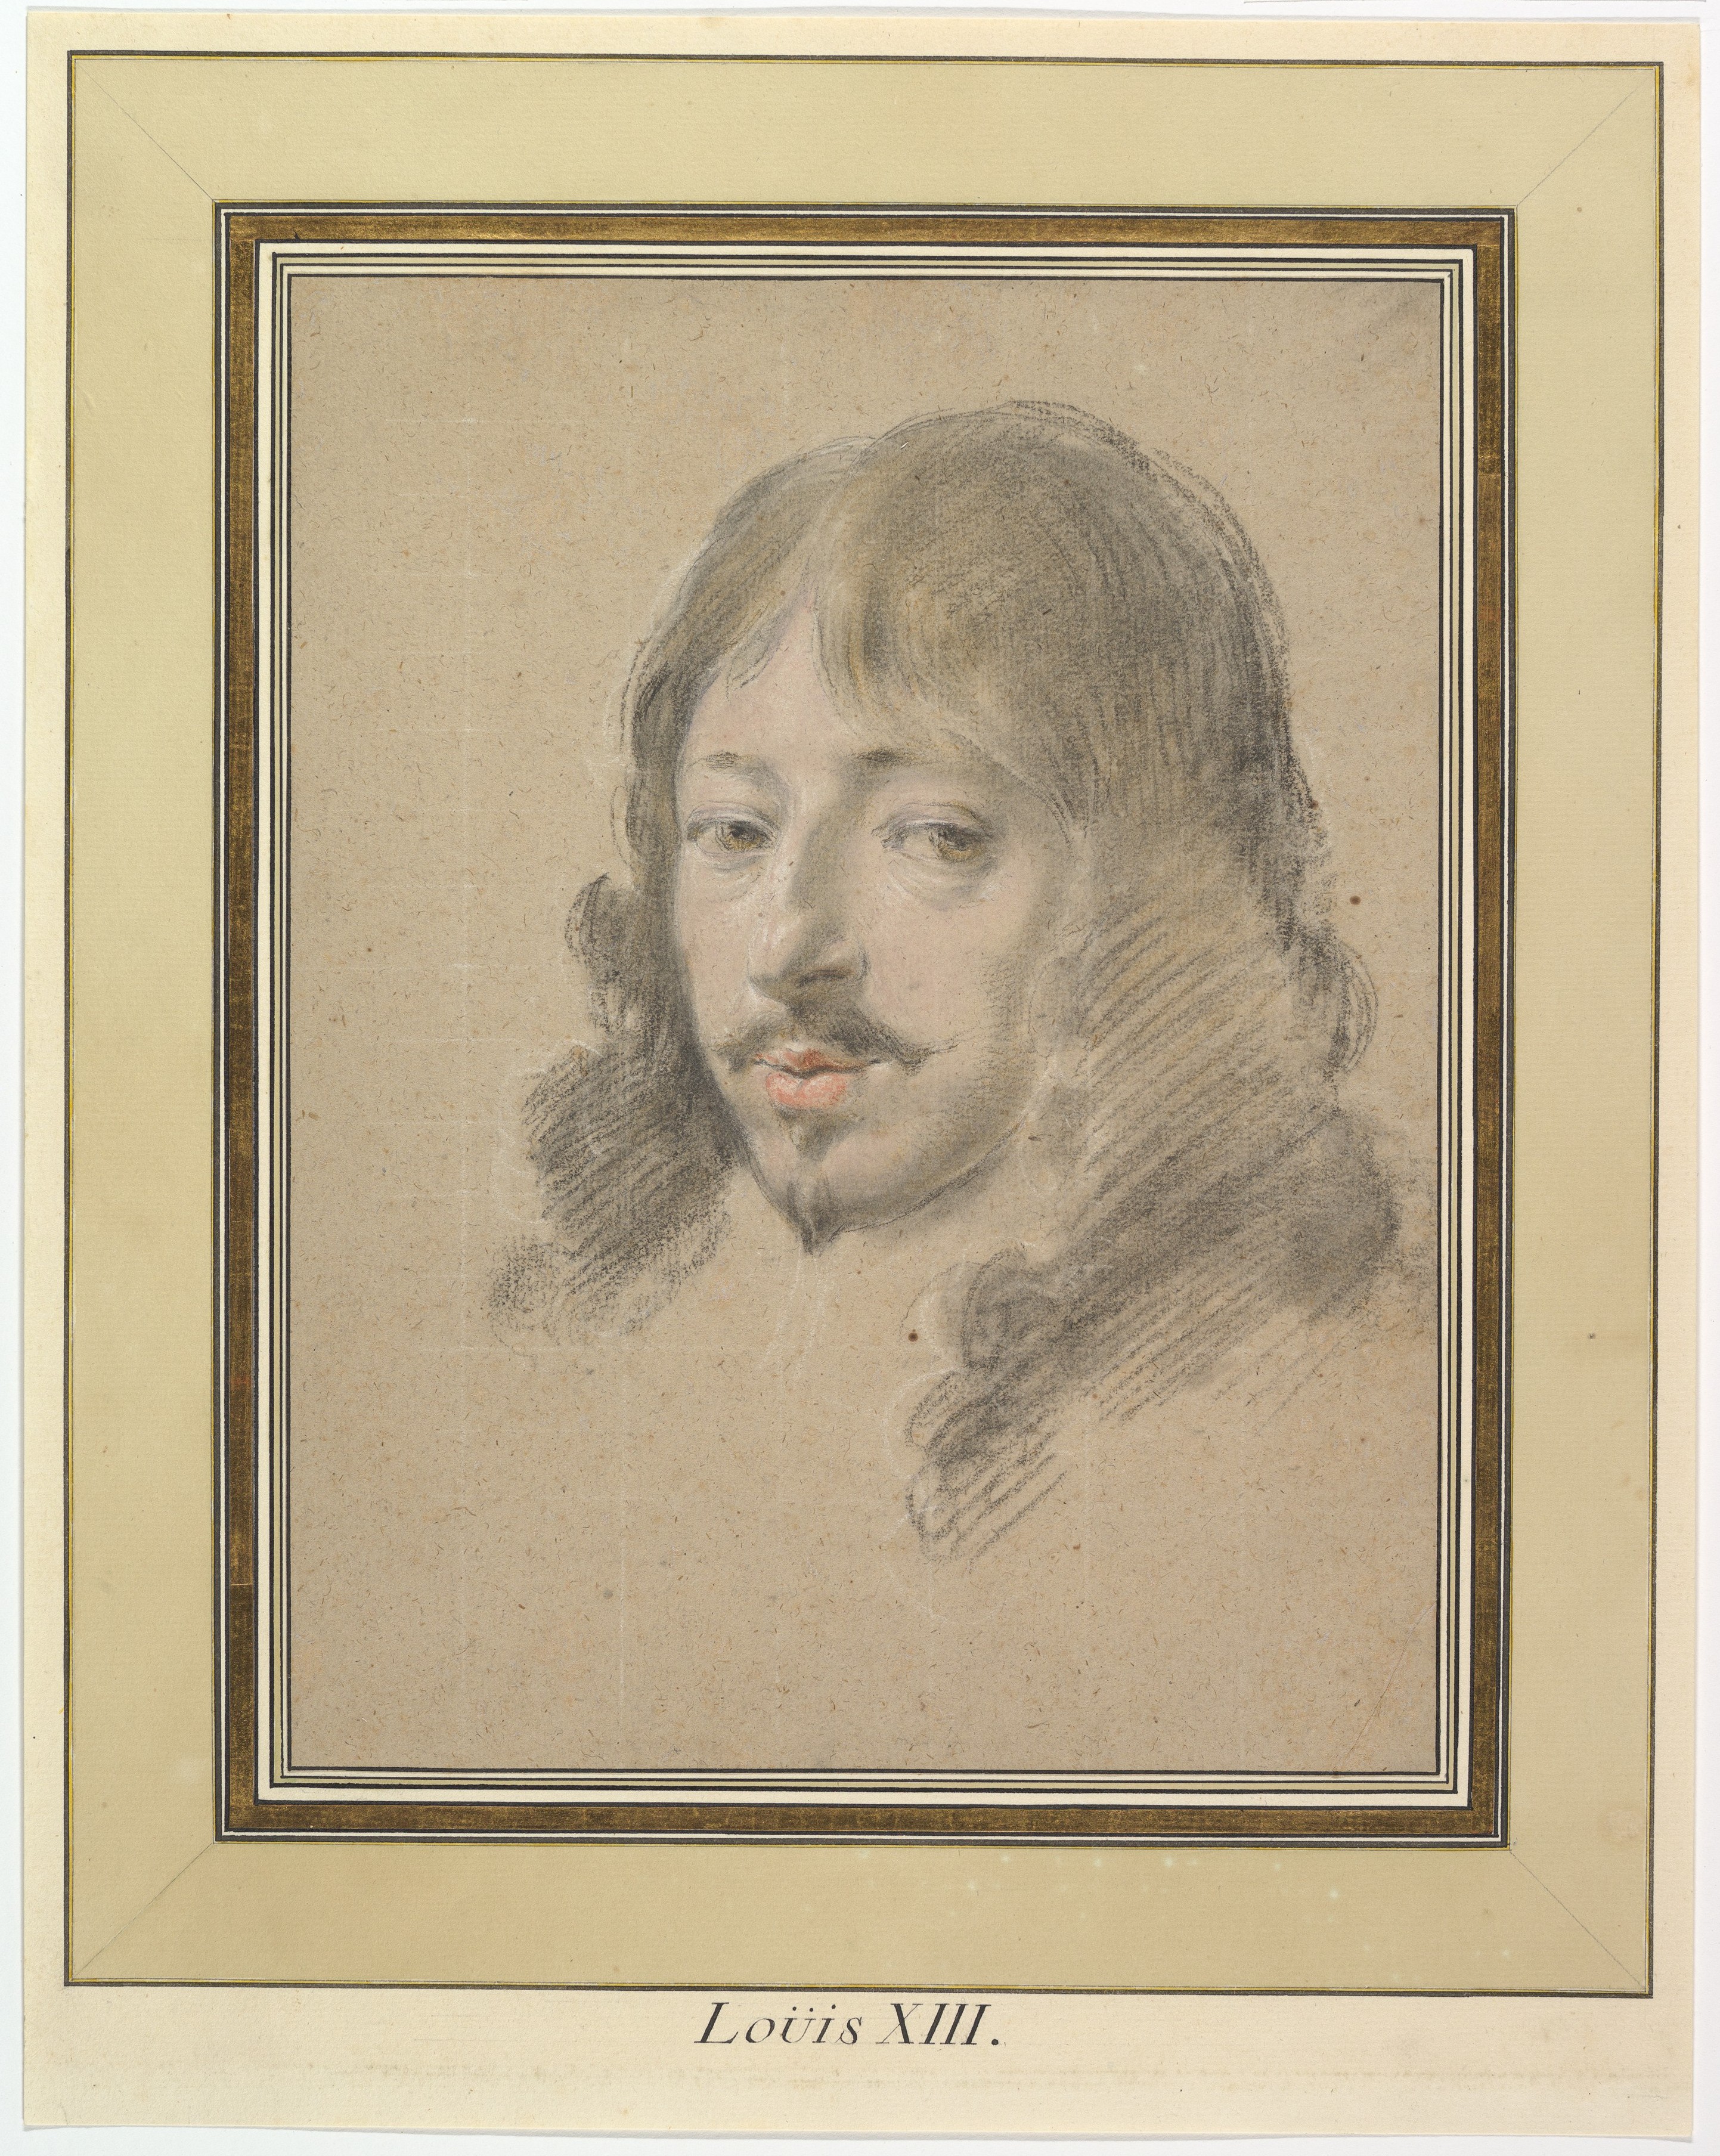 Simon Vouet, Portrait of Louis XIII